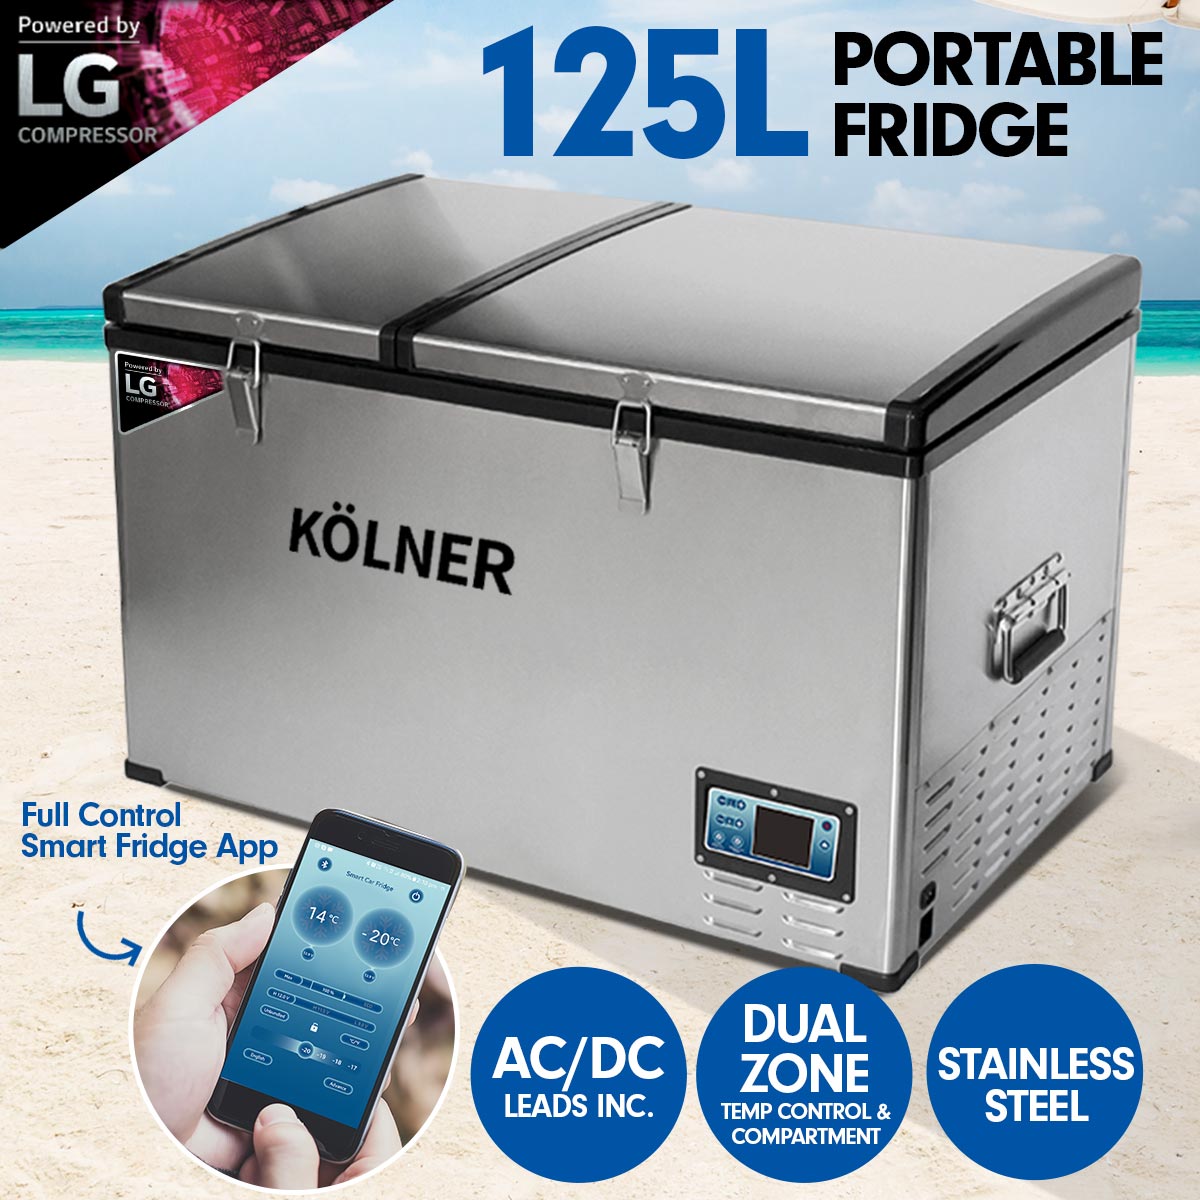 Kolner 125L Portable Fridge Cooler Freezer Camping with LG Compressor